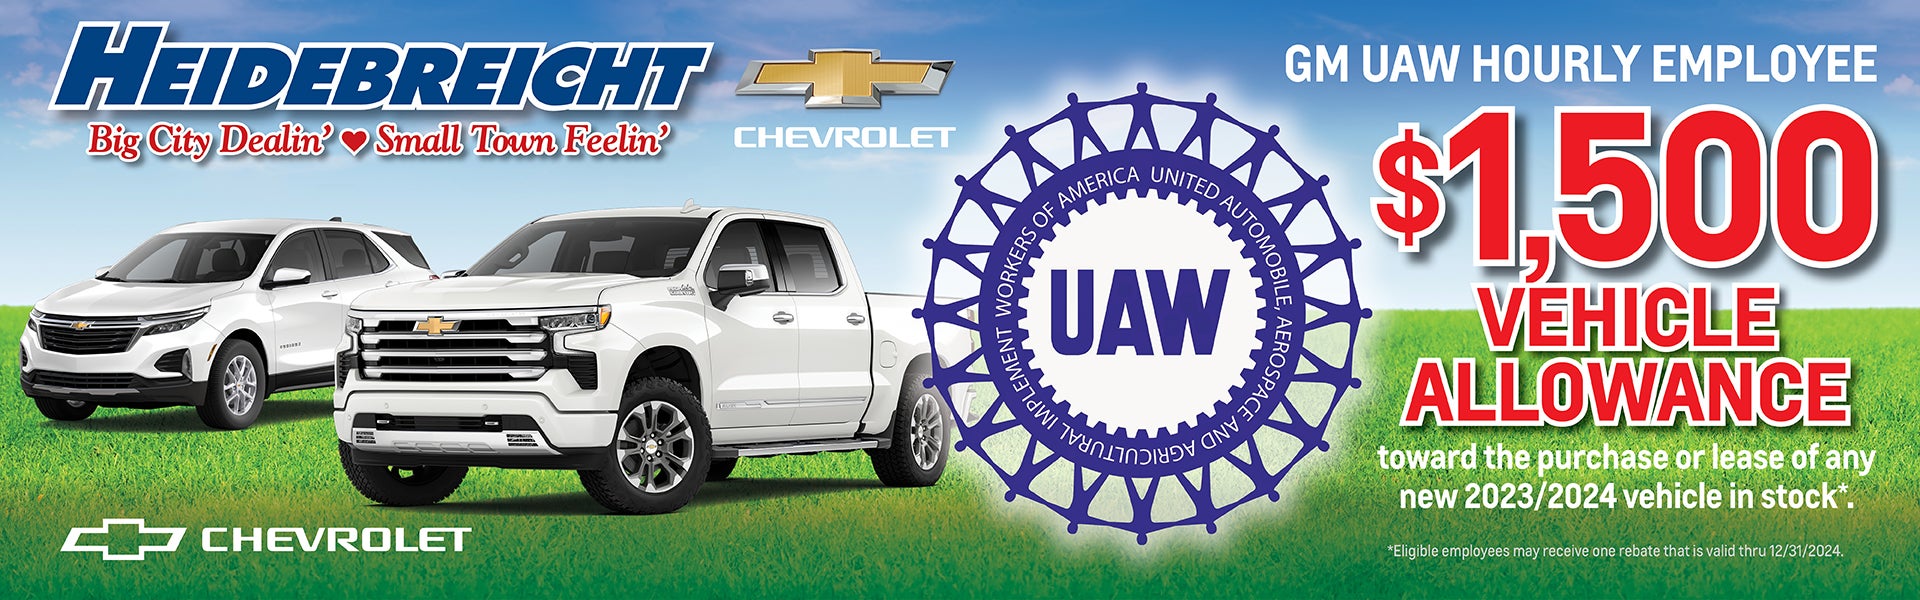 GM UAW Hourly Employee $1,500 Vehicle Allowance